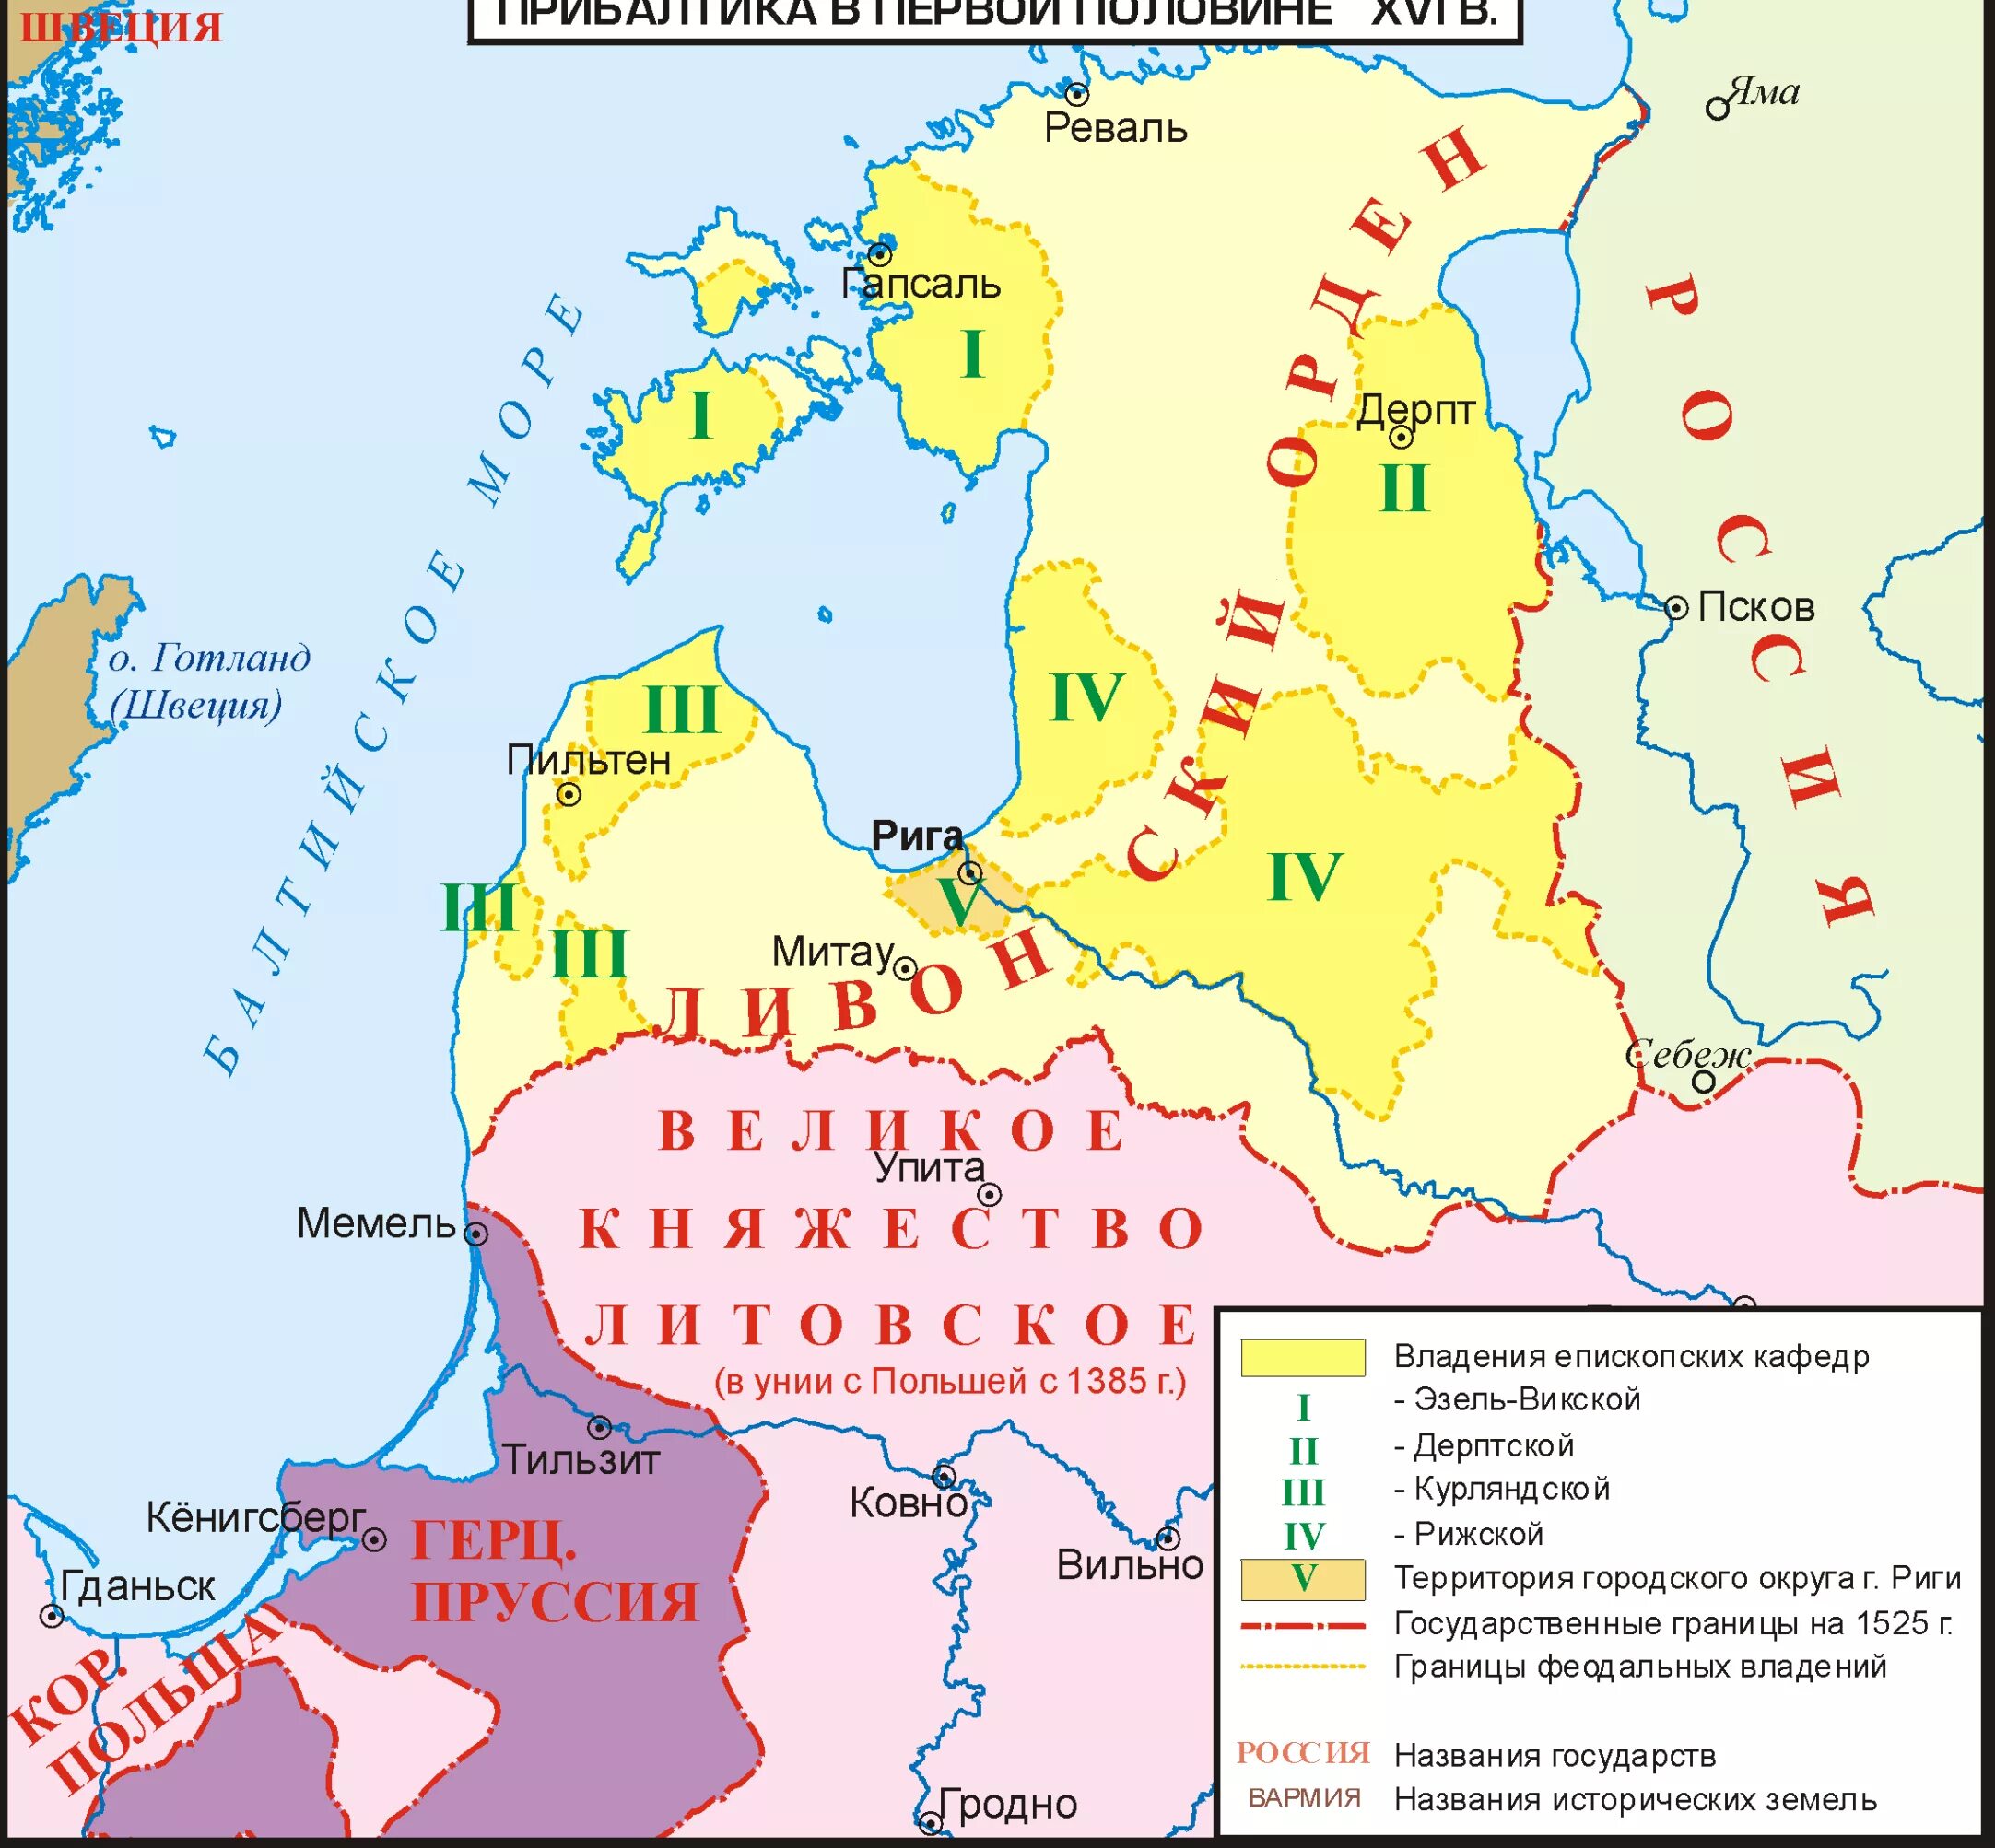 Какие народы жили в прибалтийских землях. Земли Ливонского ордена в 16 веке. Ливонский орден карта 13 век. Ливонский орден на карте в 16 веке. Границы Ливонского ордена в 13 веке.